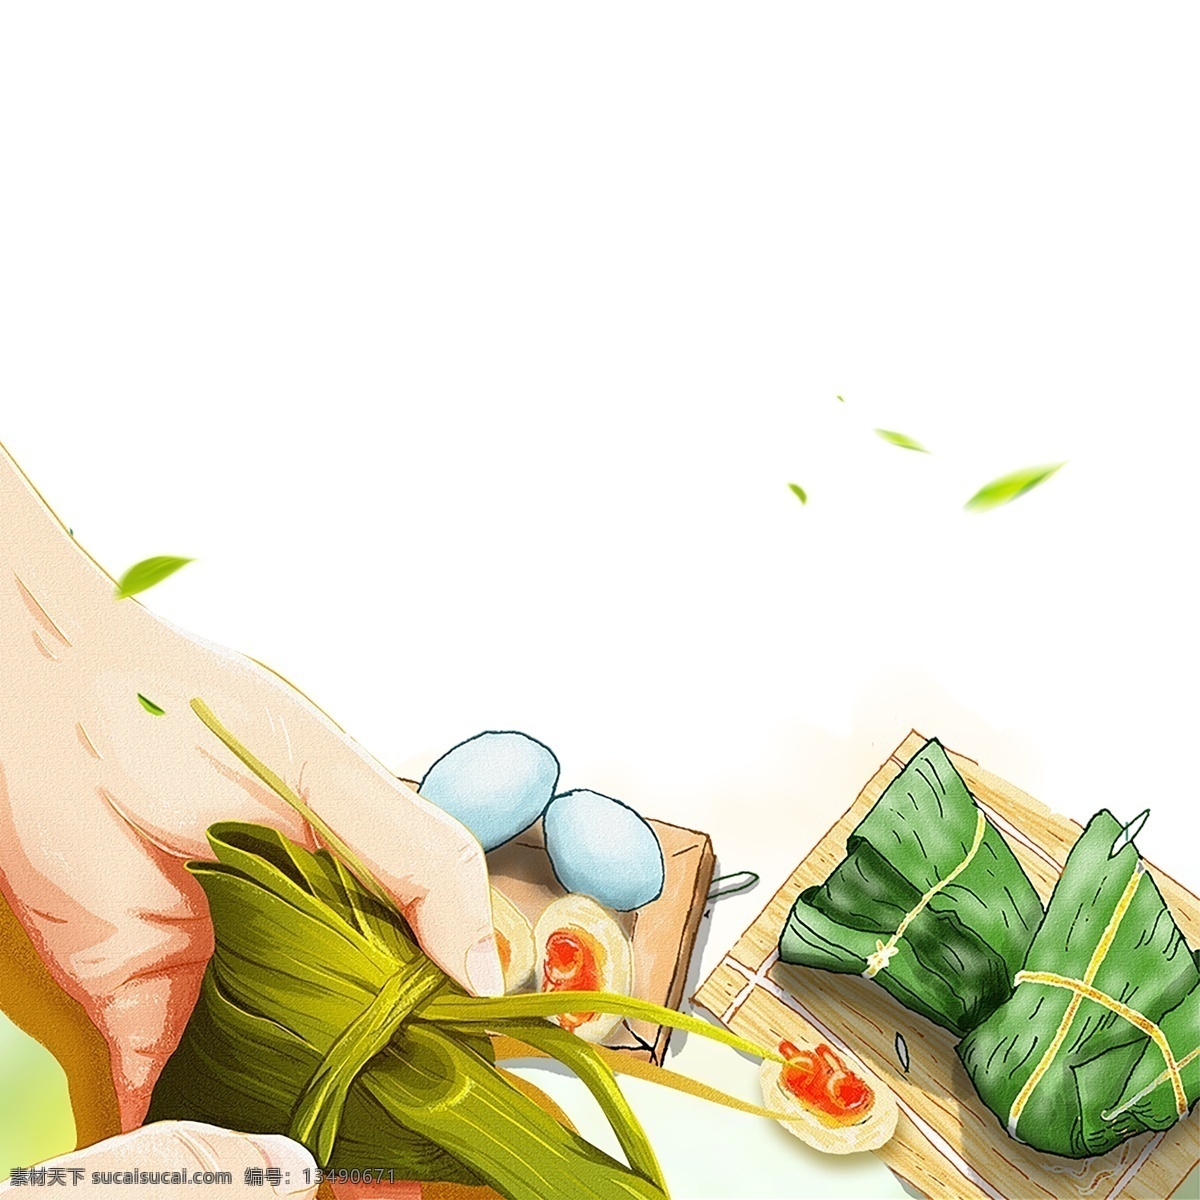 温馨 包 粽子 装饰 元素 装饰元素 手绘 食物 鸡蛋 糯米 树叶